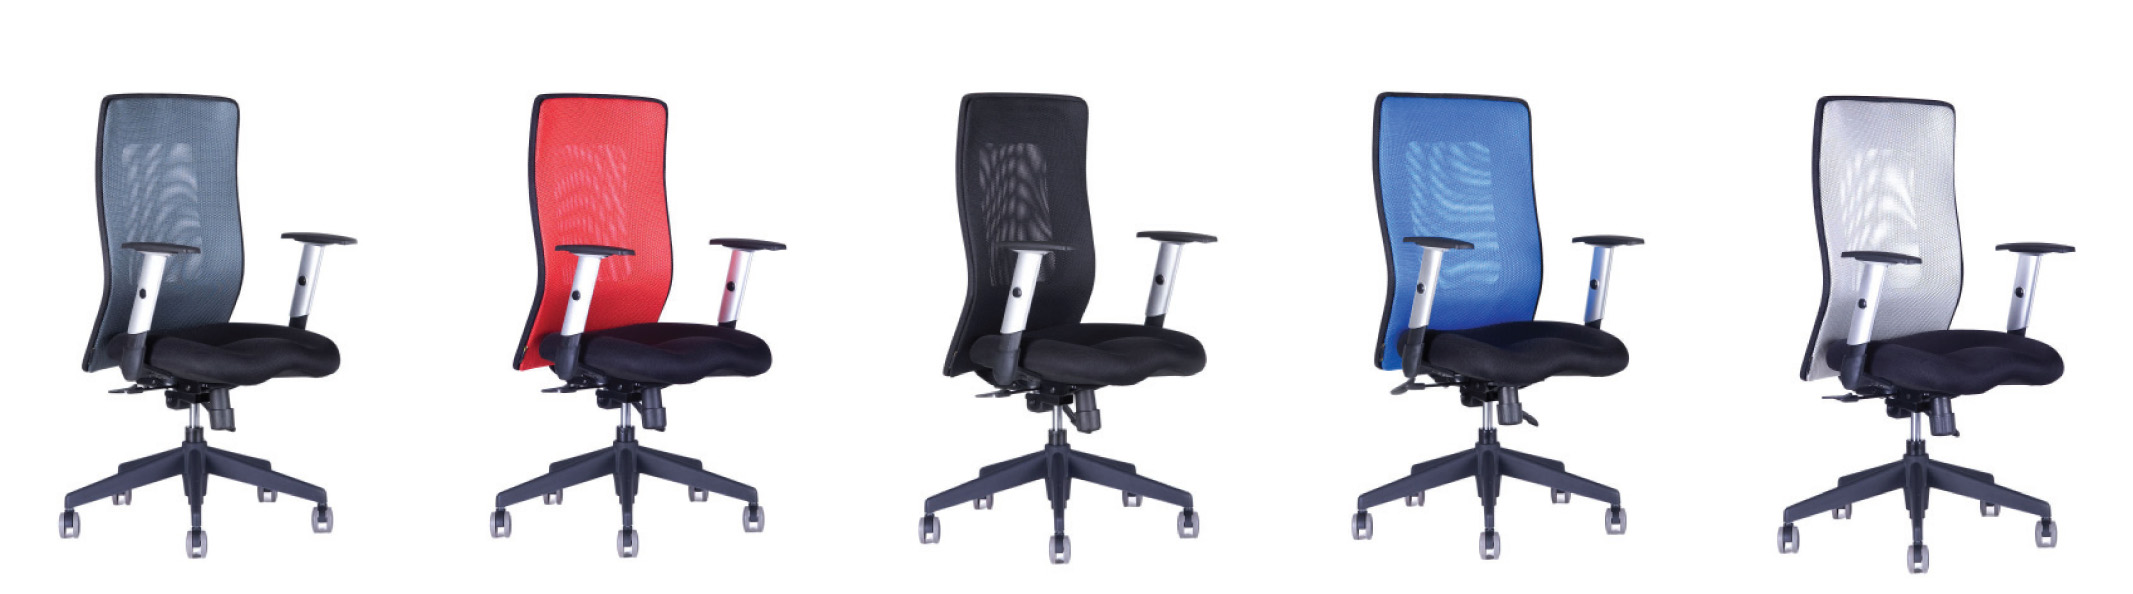 ergonomicka-kancelarska-zide-officepro-calypso-grand-bp-vsechny-barvy